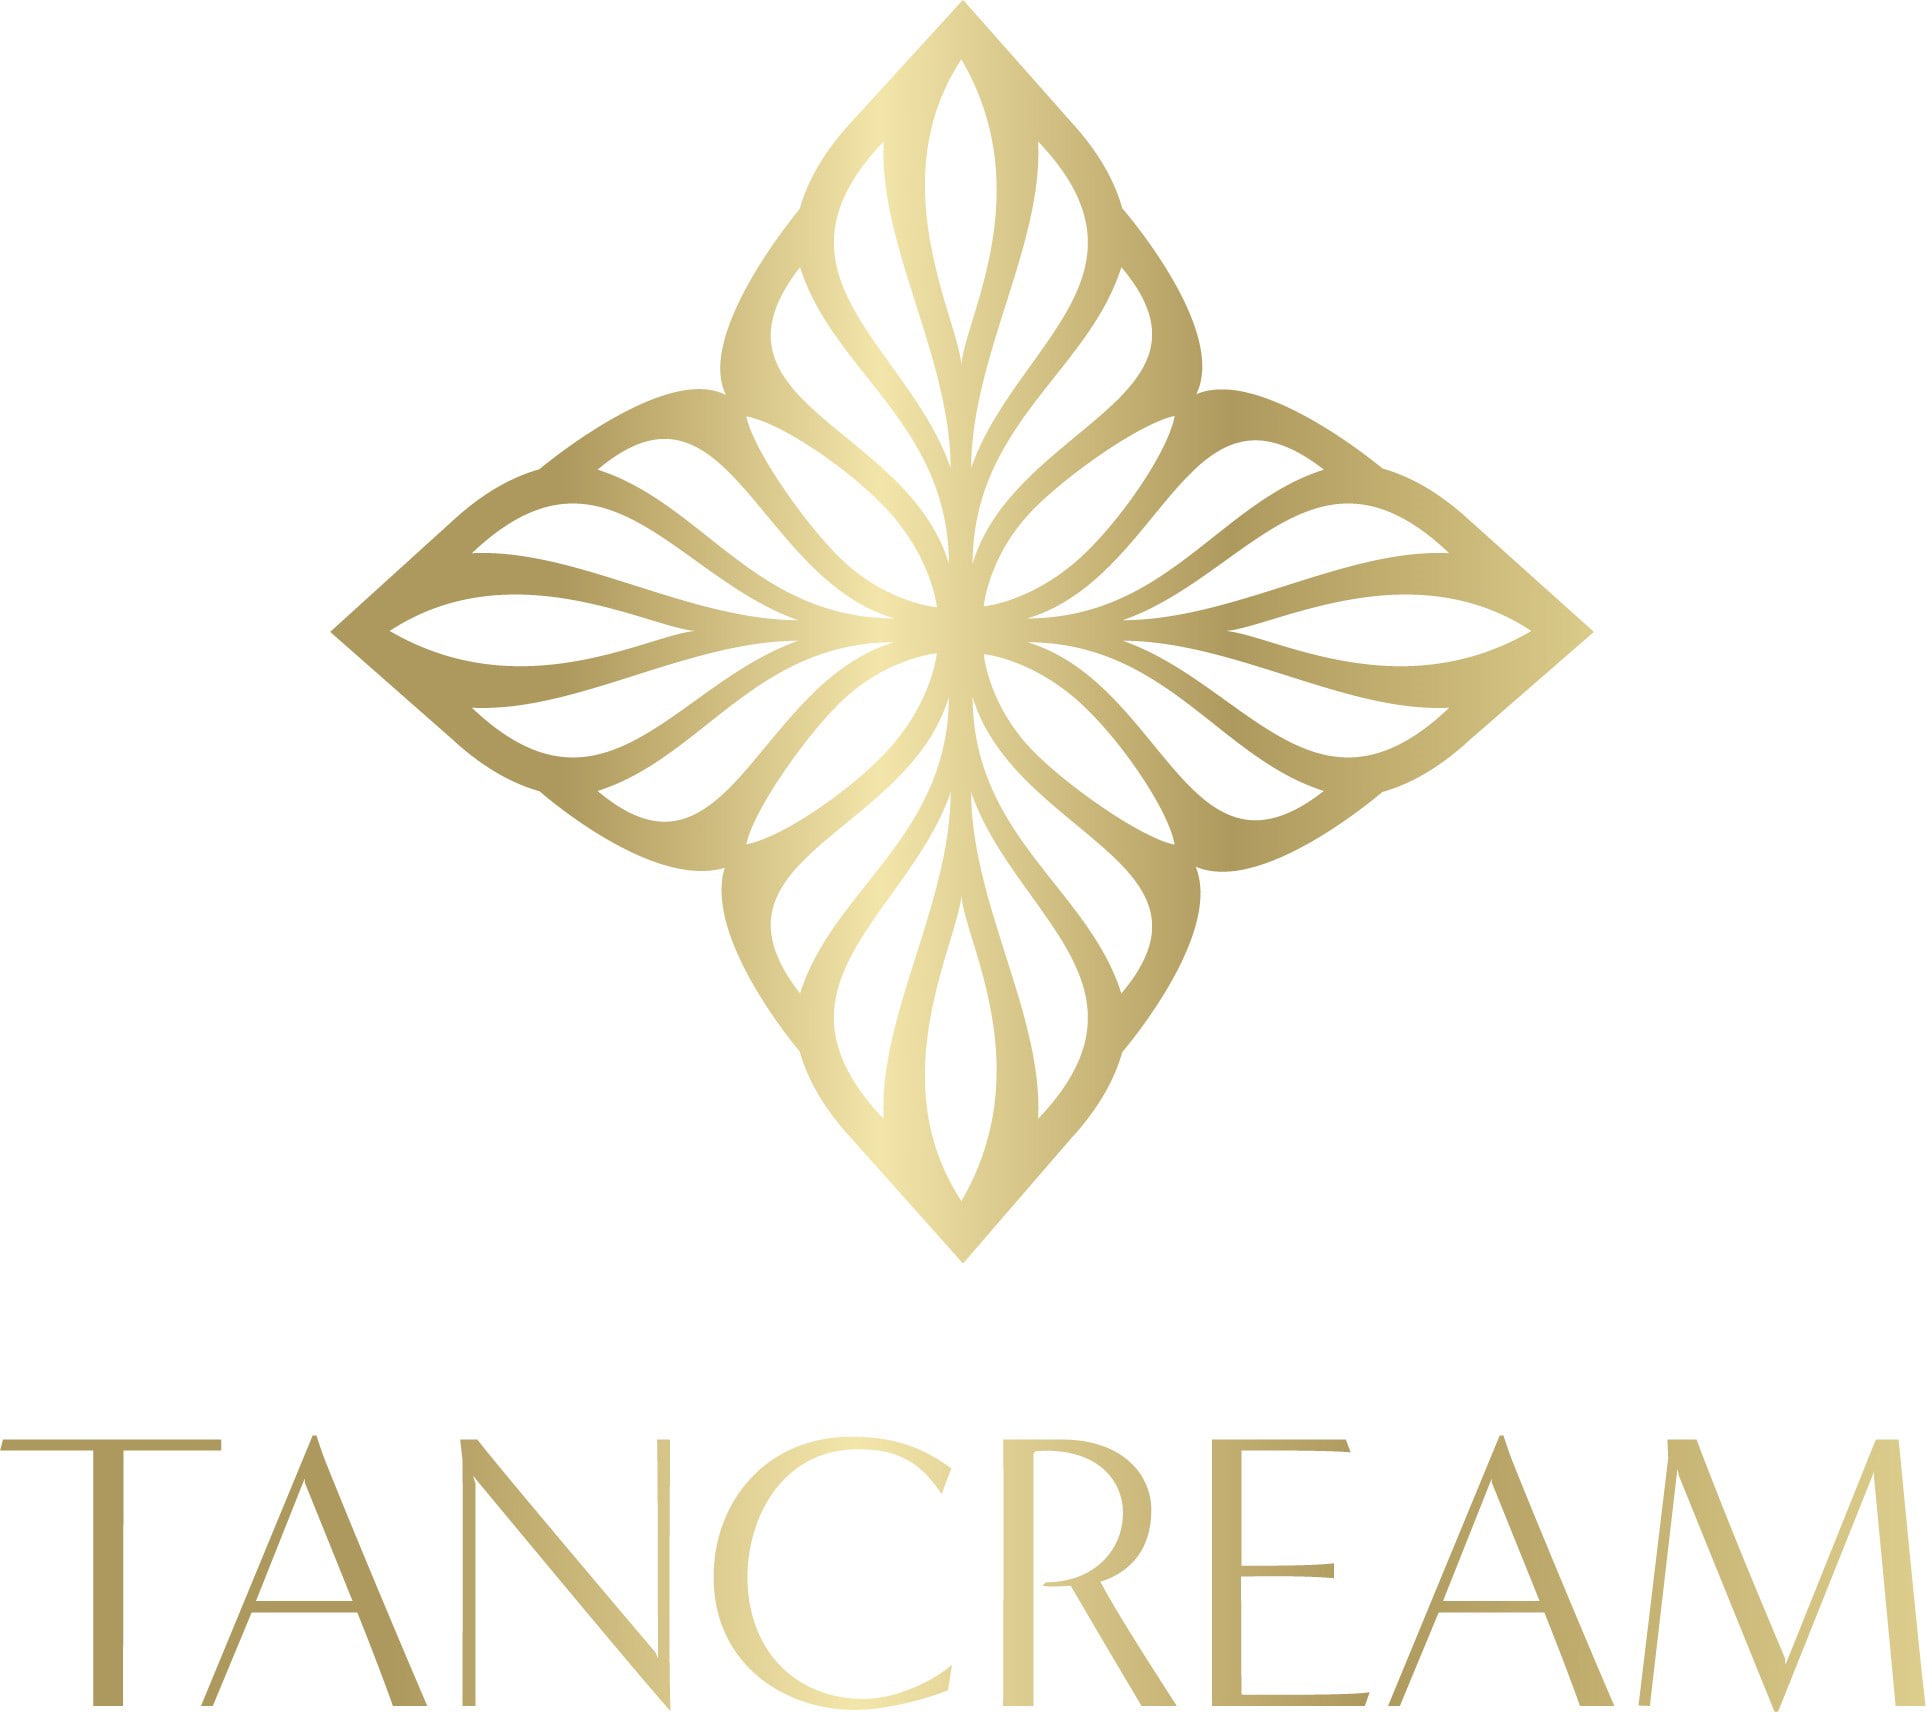 Tan Cream